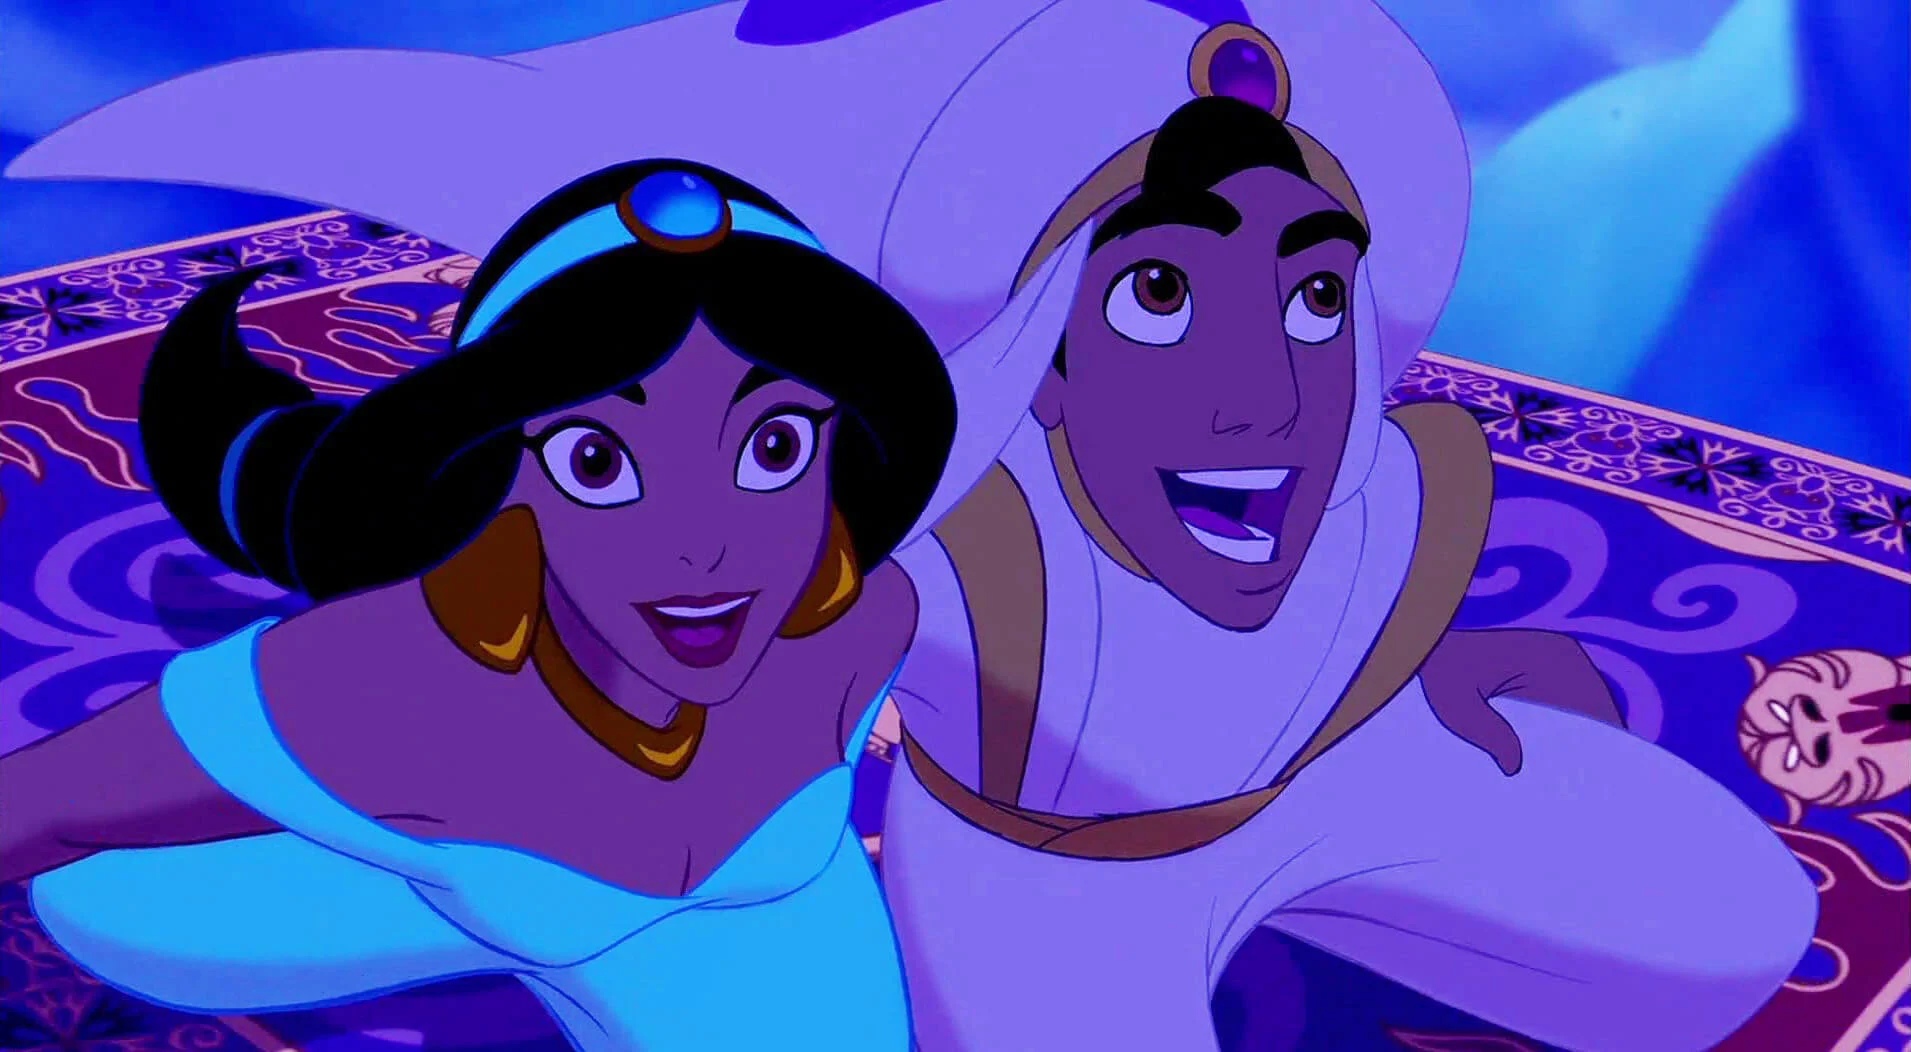 jasmine e aladdin volano sul tappeto volante in una scena famosa di aladdin